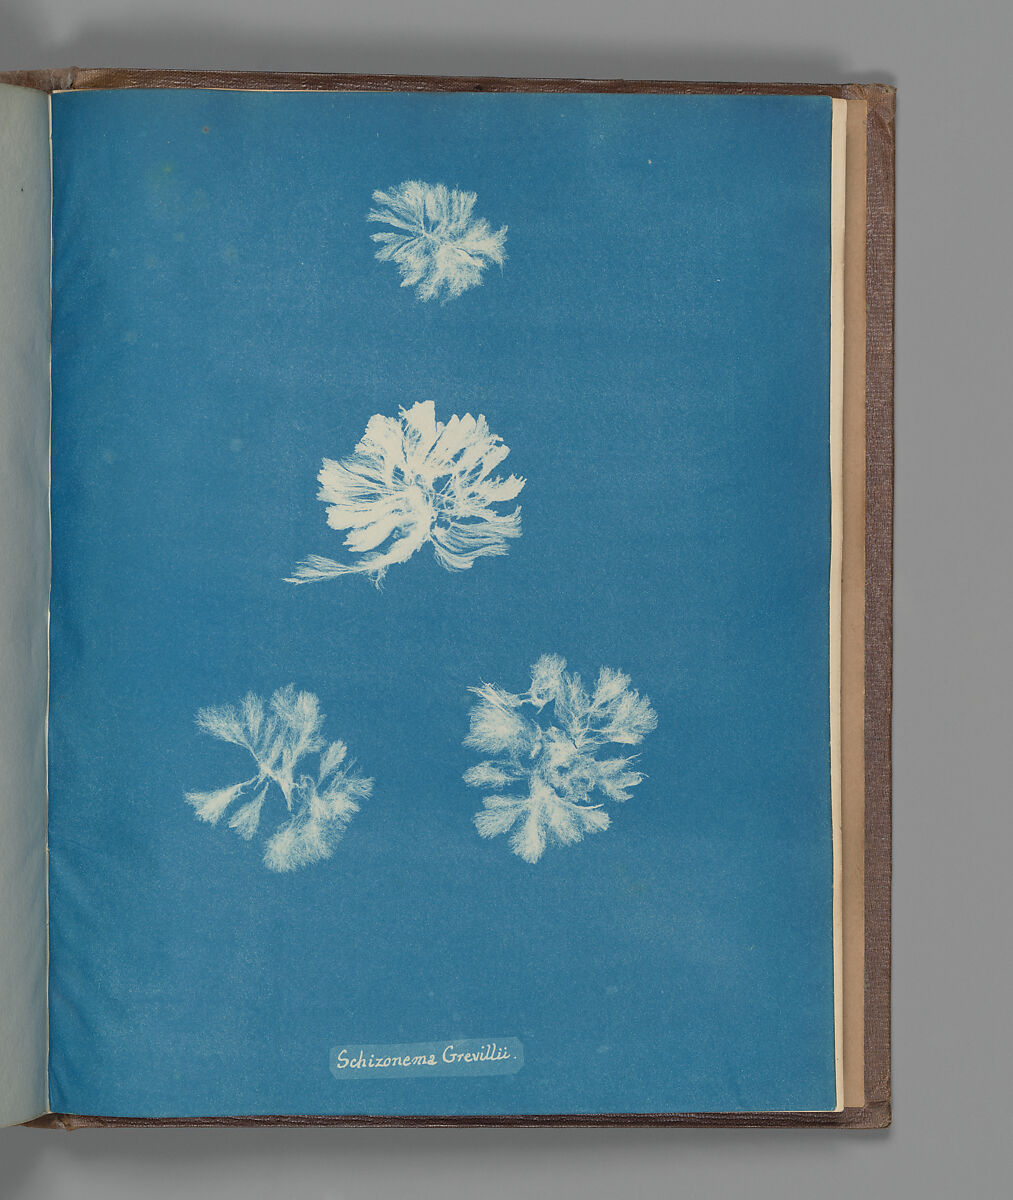 Schizonema Grevillii, Anna Atkins (British, 1799–1871), Cyanotype 